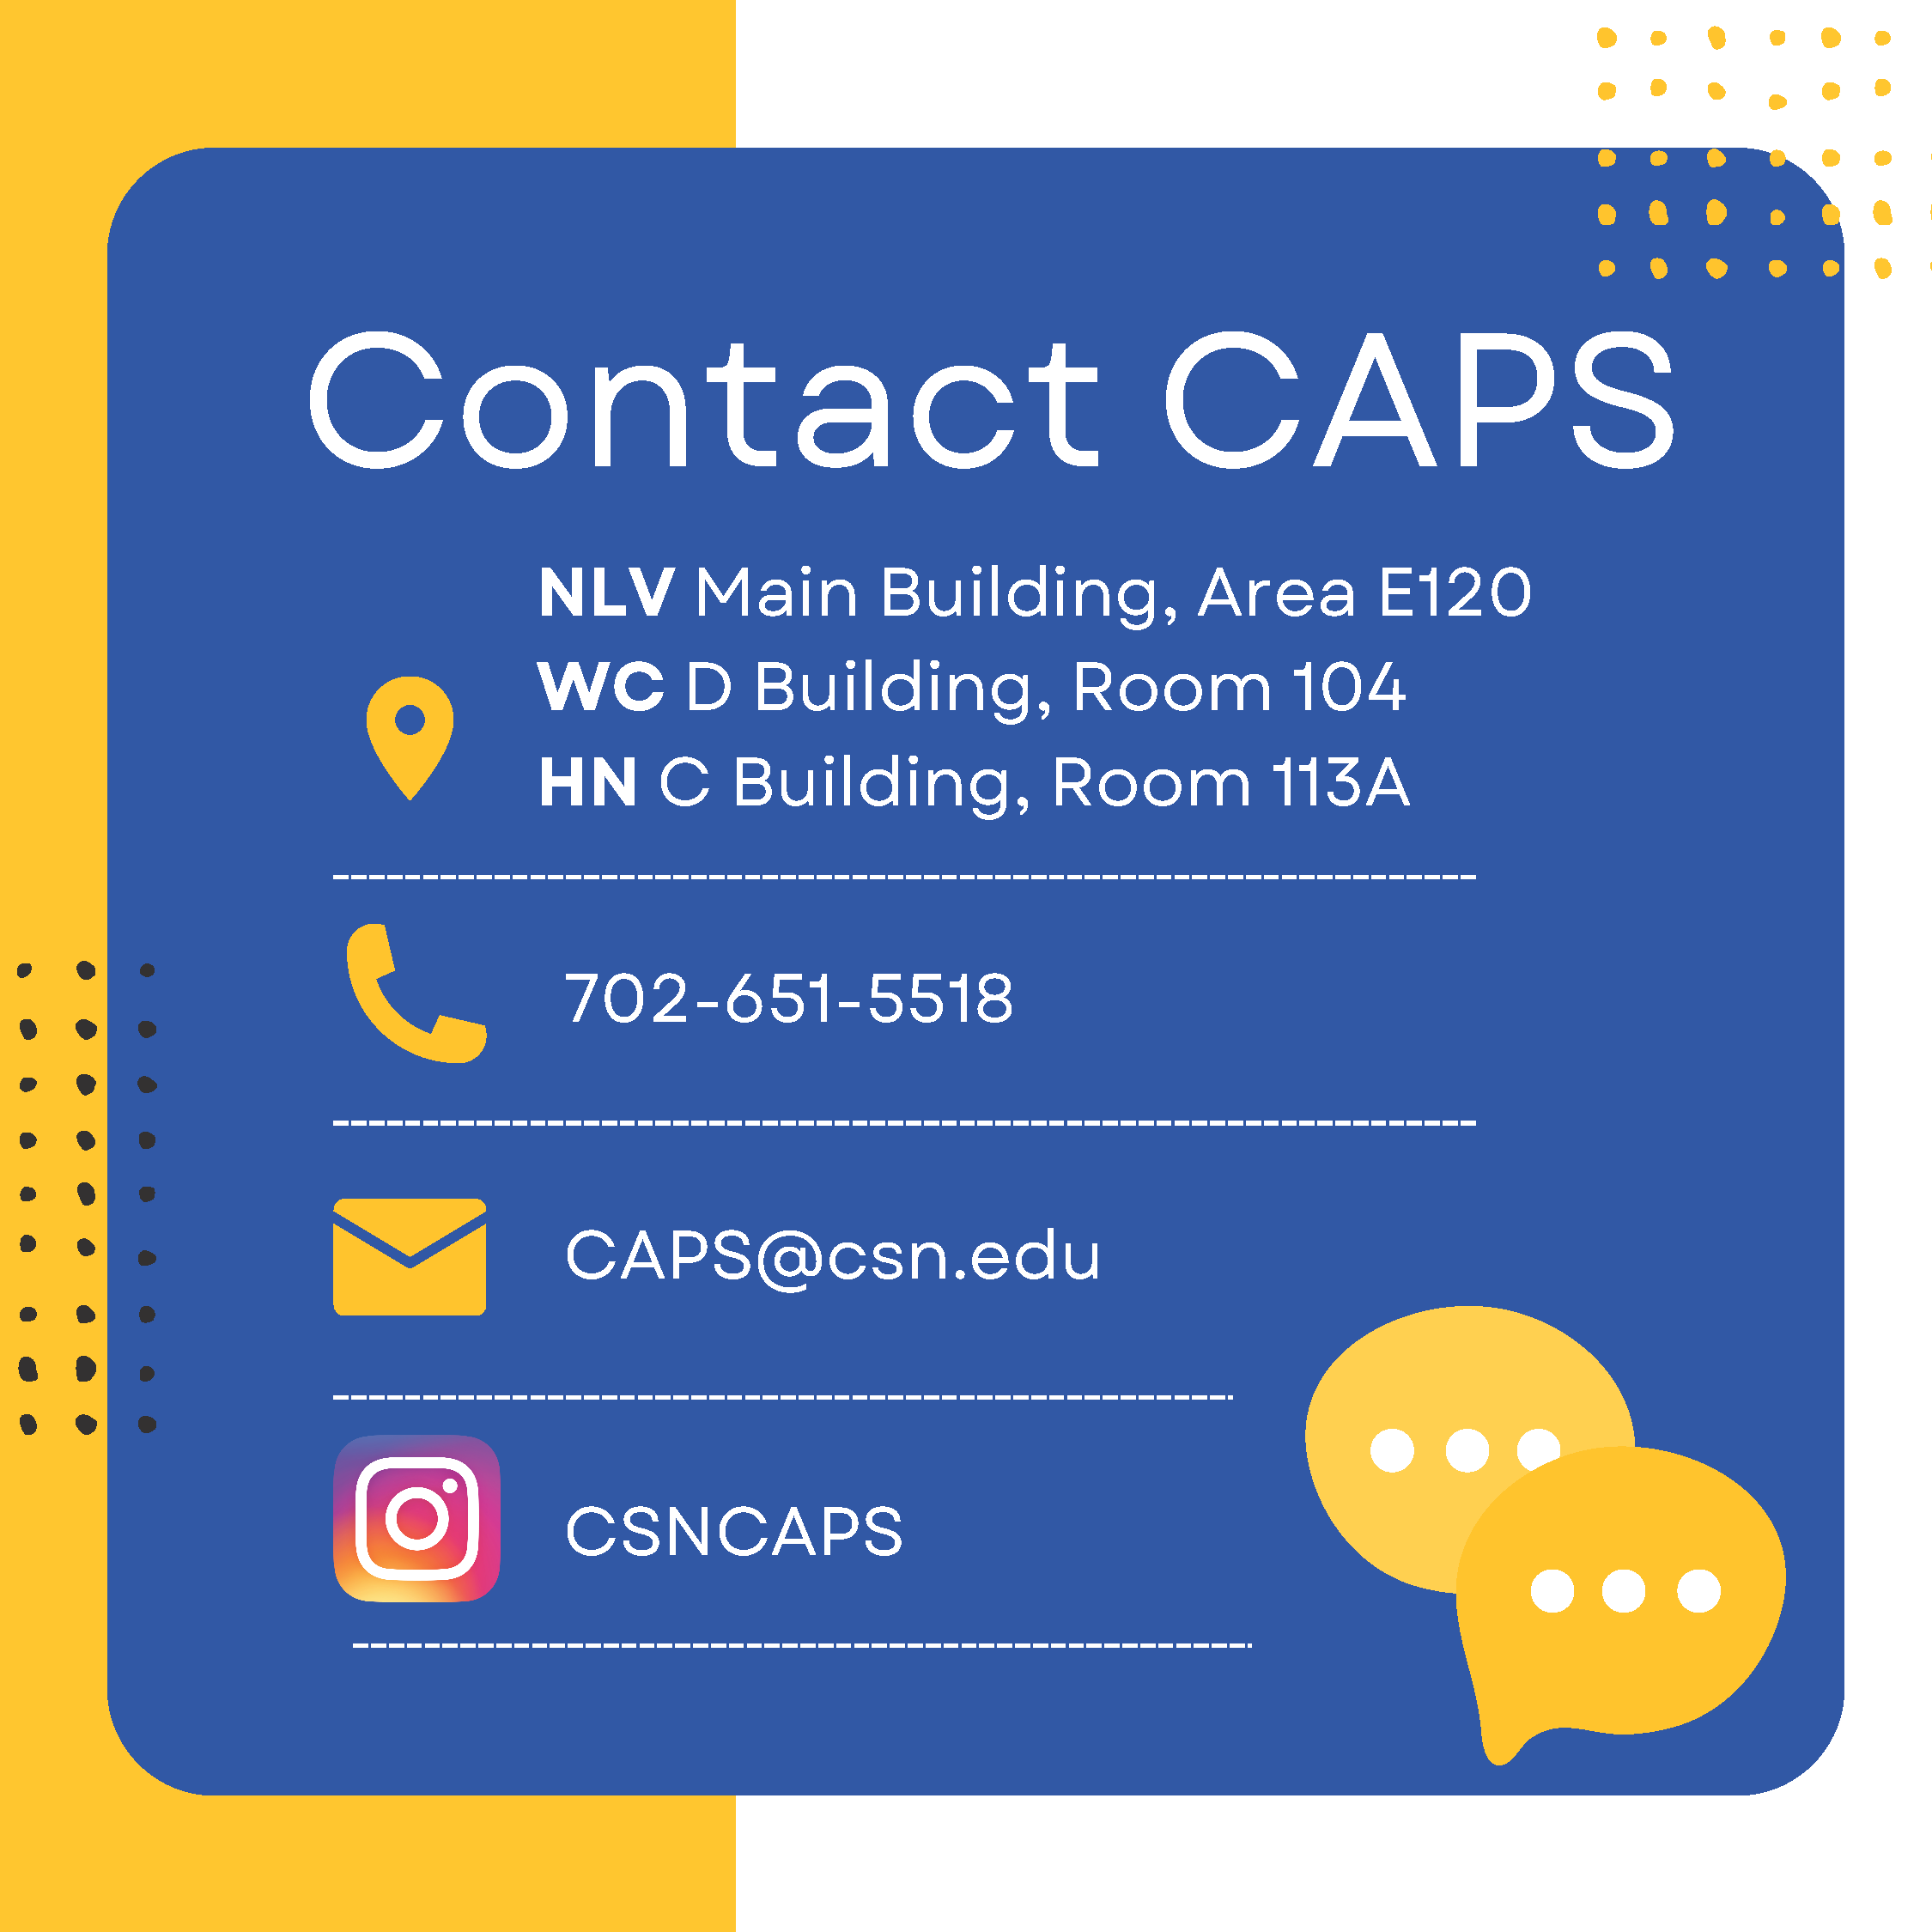 Contact CAPS